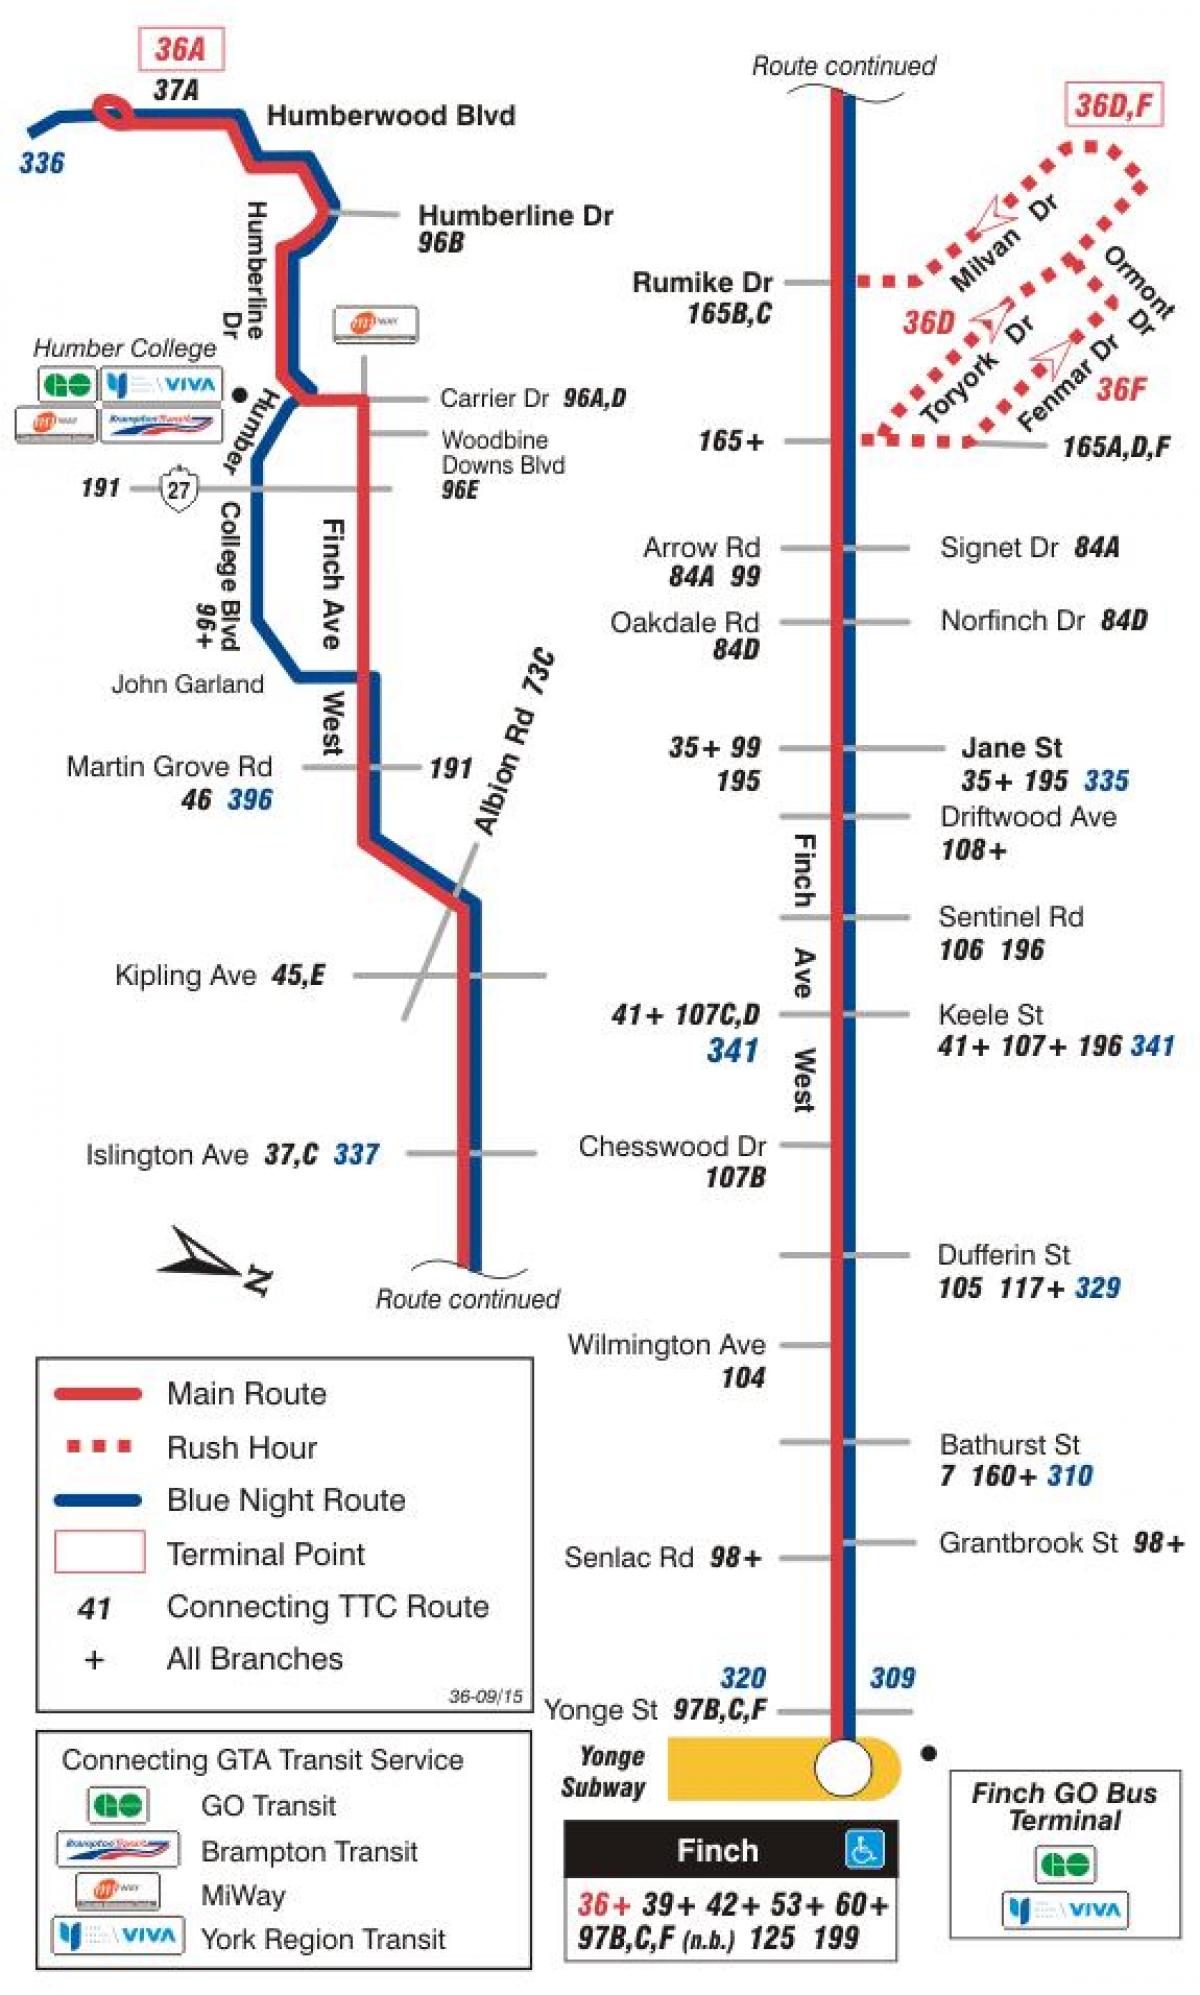 Χάρτης της TTC 36 Φιντς Δυτική διαδρομή του λεωφορείου Τορόντο